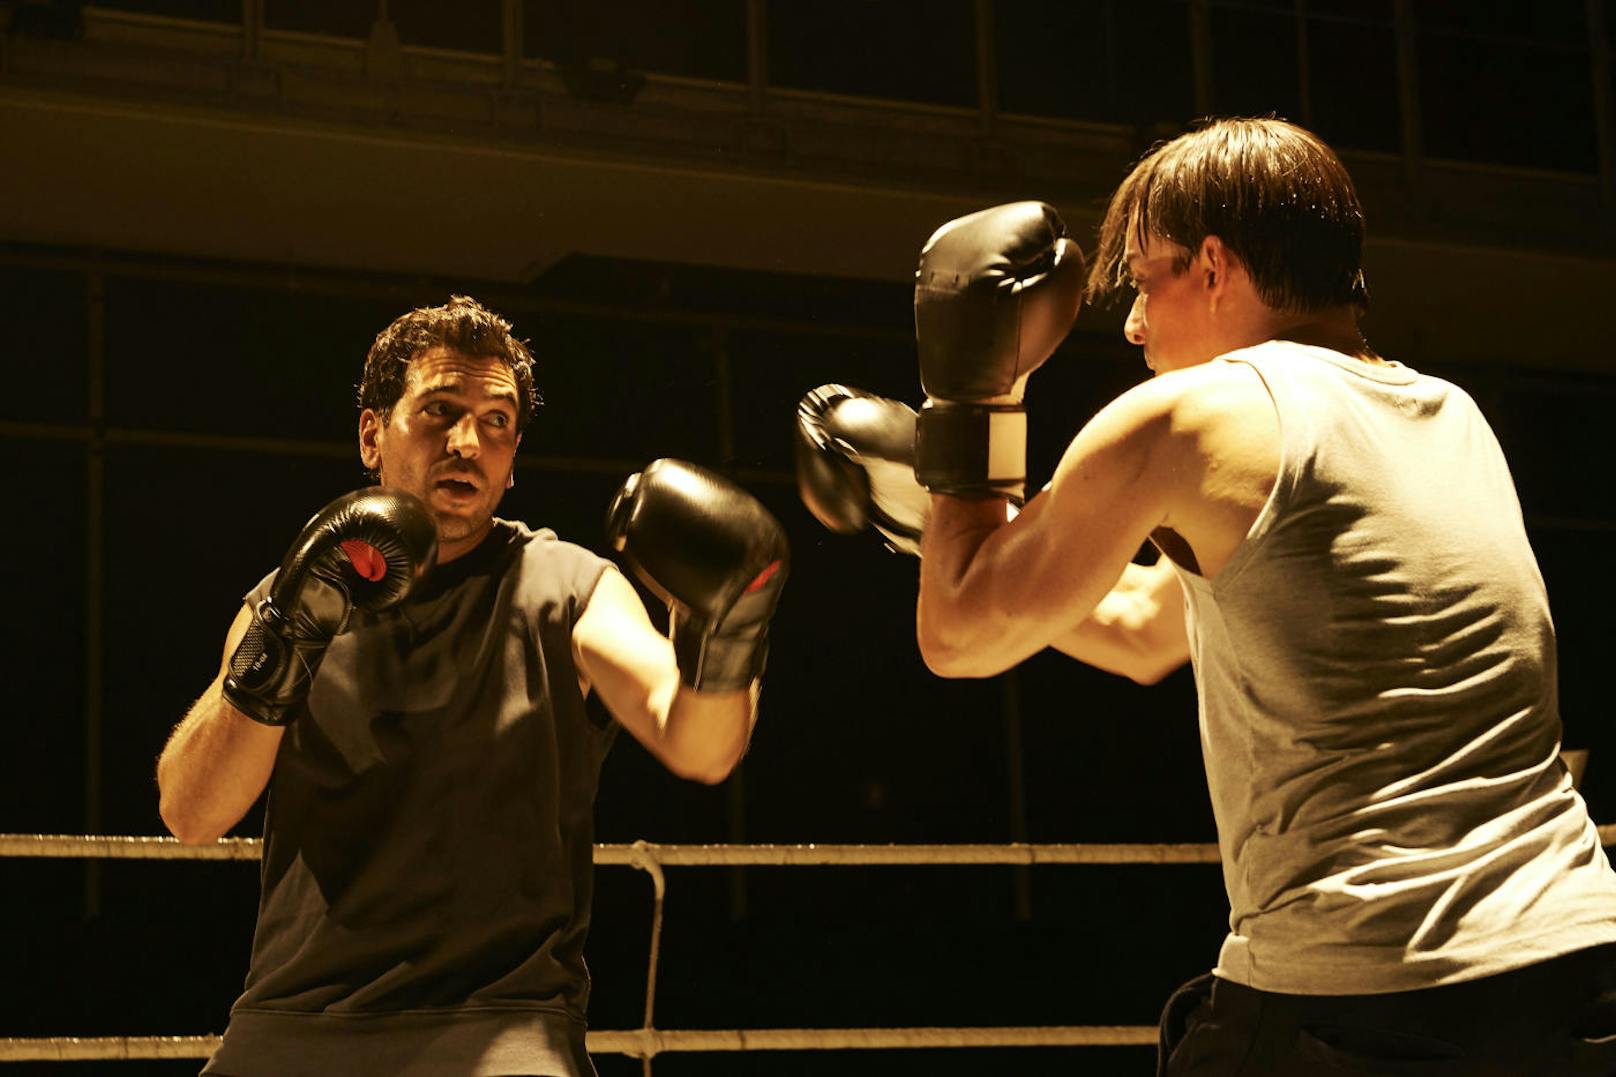 Caspar Leinen (Elyas M'Barek) sucht im Boxkampf mit seinem Freund Aicke (Hannes Wegener) den sportlichen Ausgleich zum schwierigen Kriminalfall.